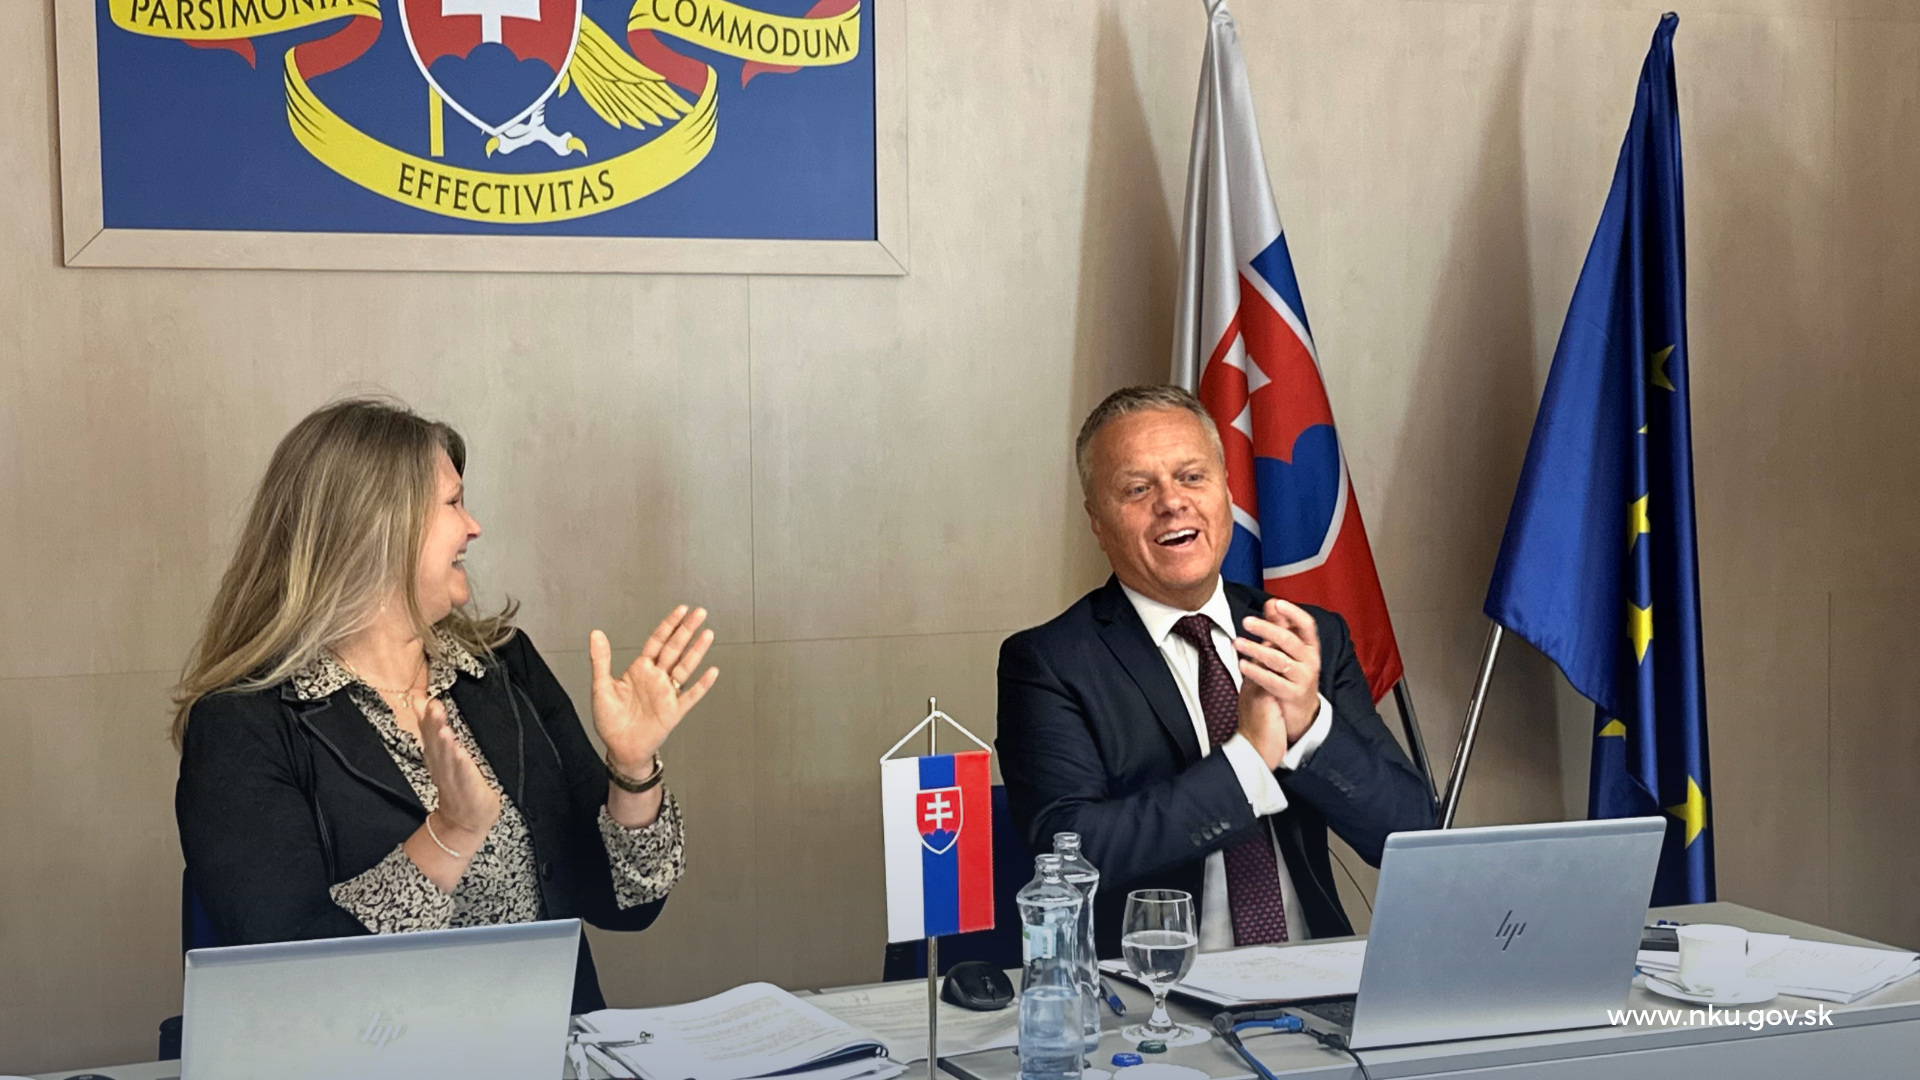 Foto: Predseda NKÚ Ľubomír Andrassy a šéfka sekcie analýz a inovácií Ľubica Gazdová po tom, čo bol slovenský NKÚ zvolený za predsednícky úrad EUROSAI.